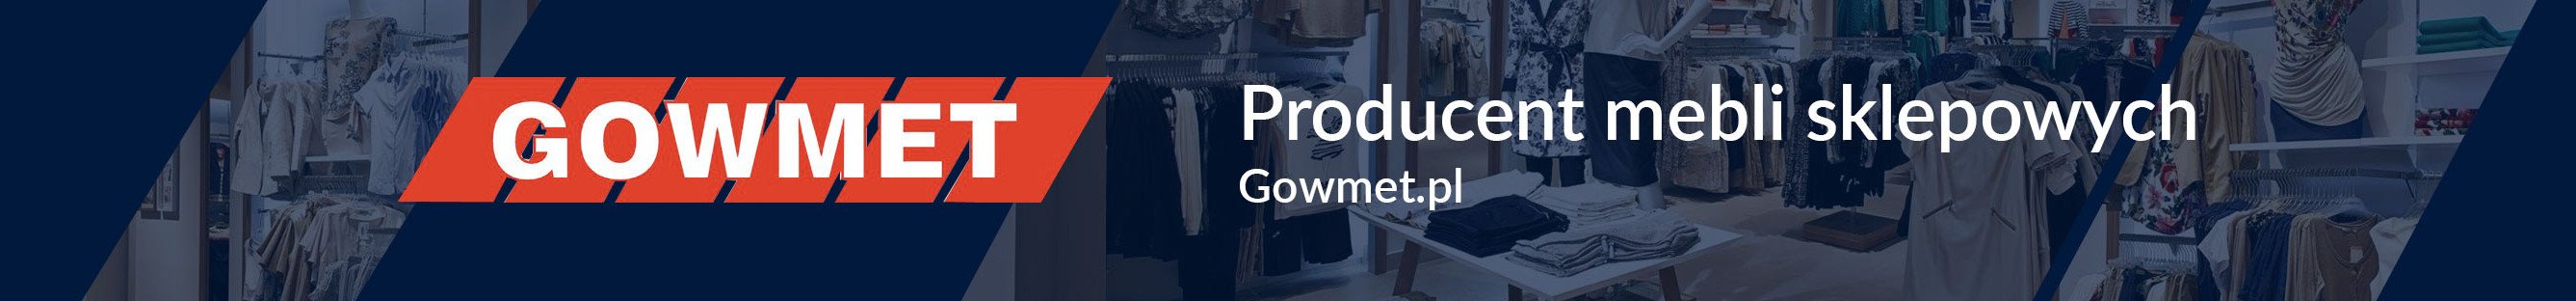 GOWMET-producent mebli sklepowych